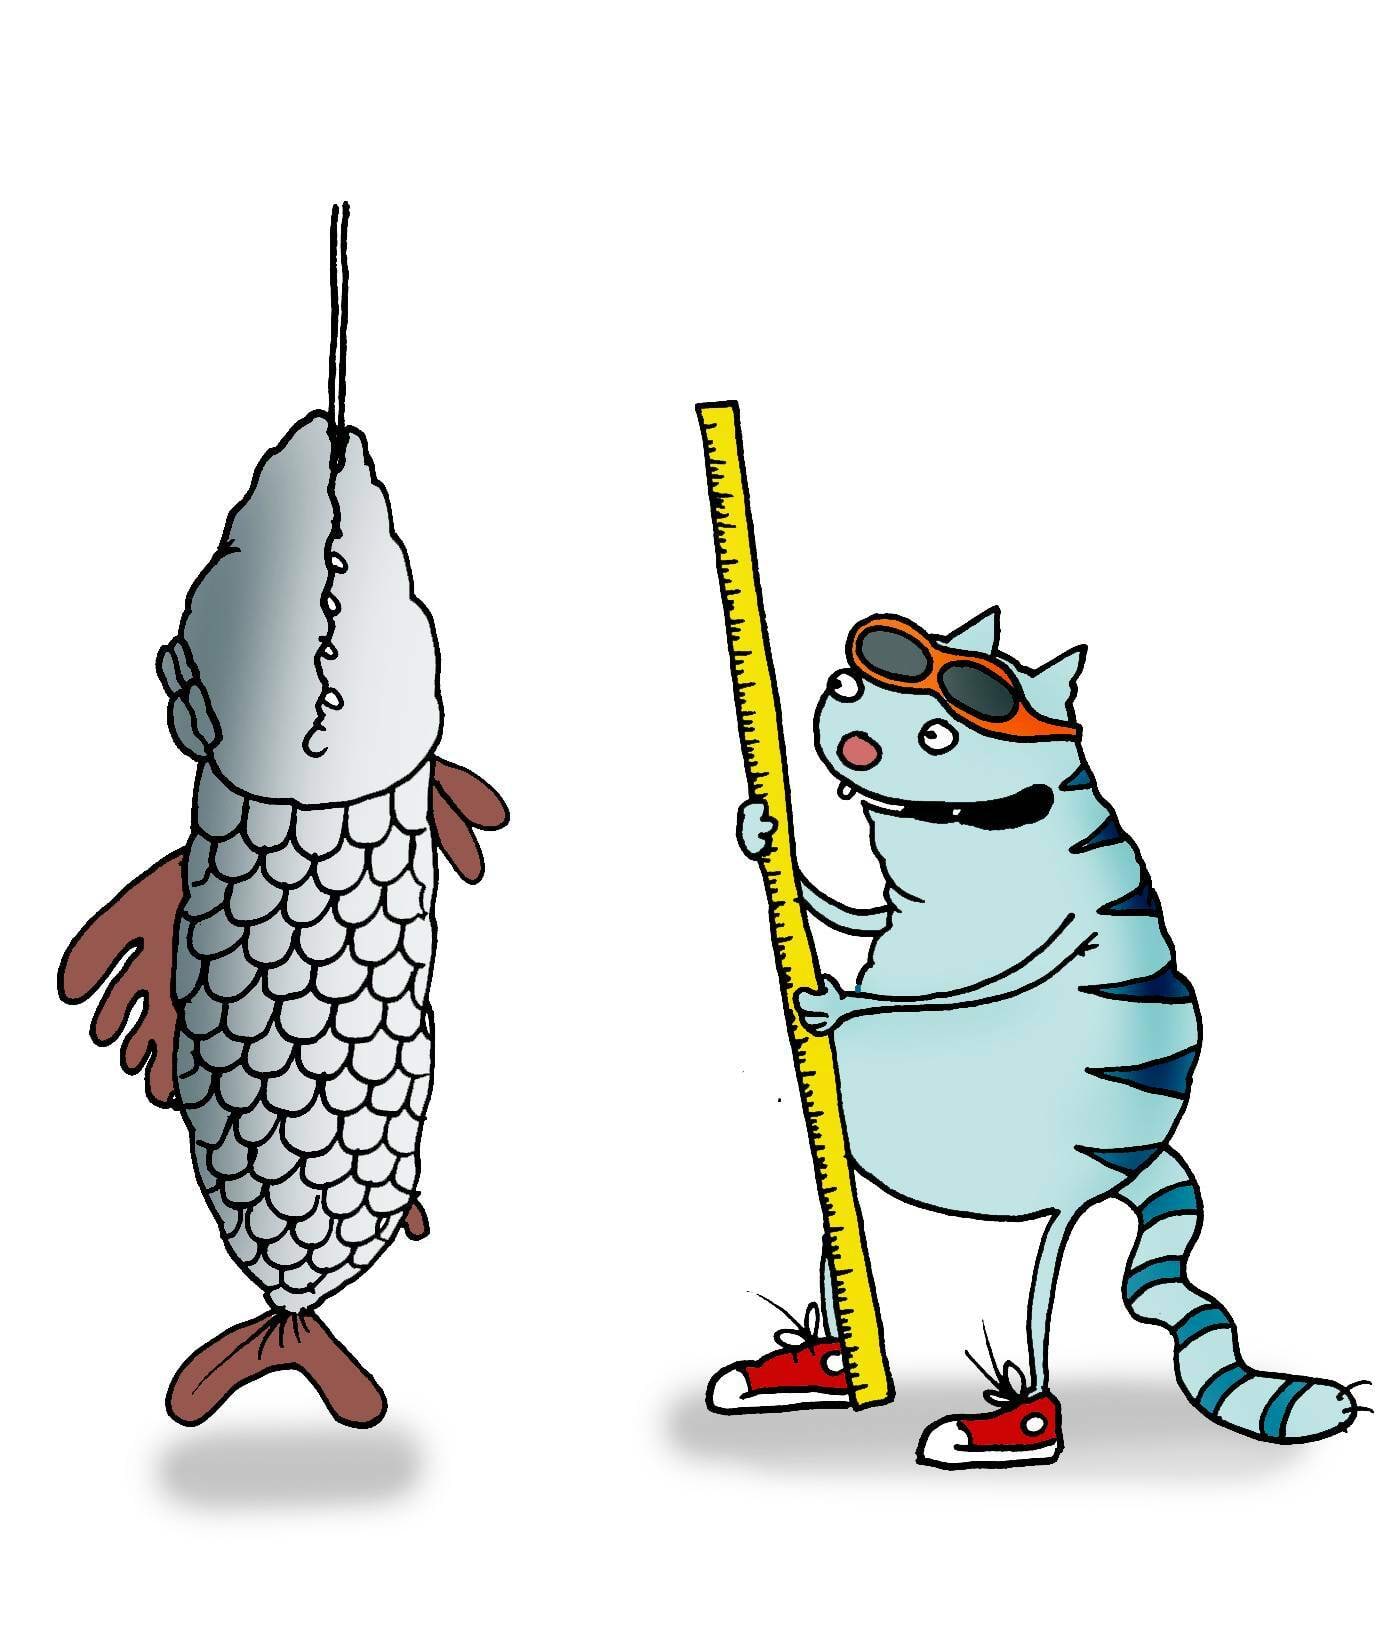 Kass mõõdab suurt kala, parallaktiline viga